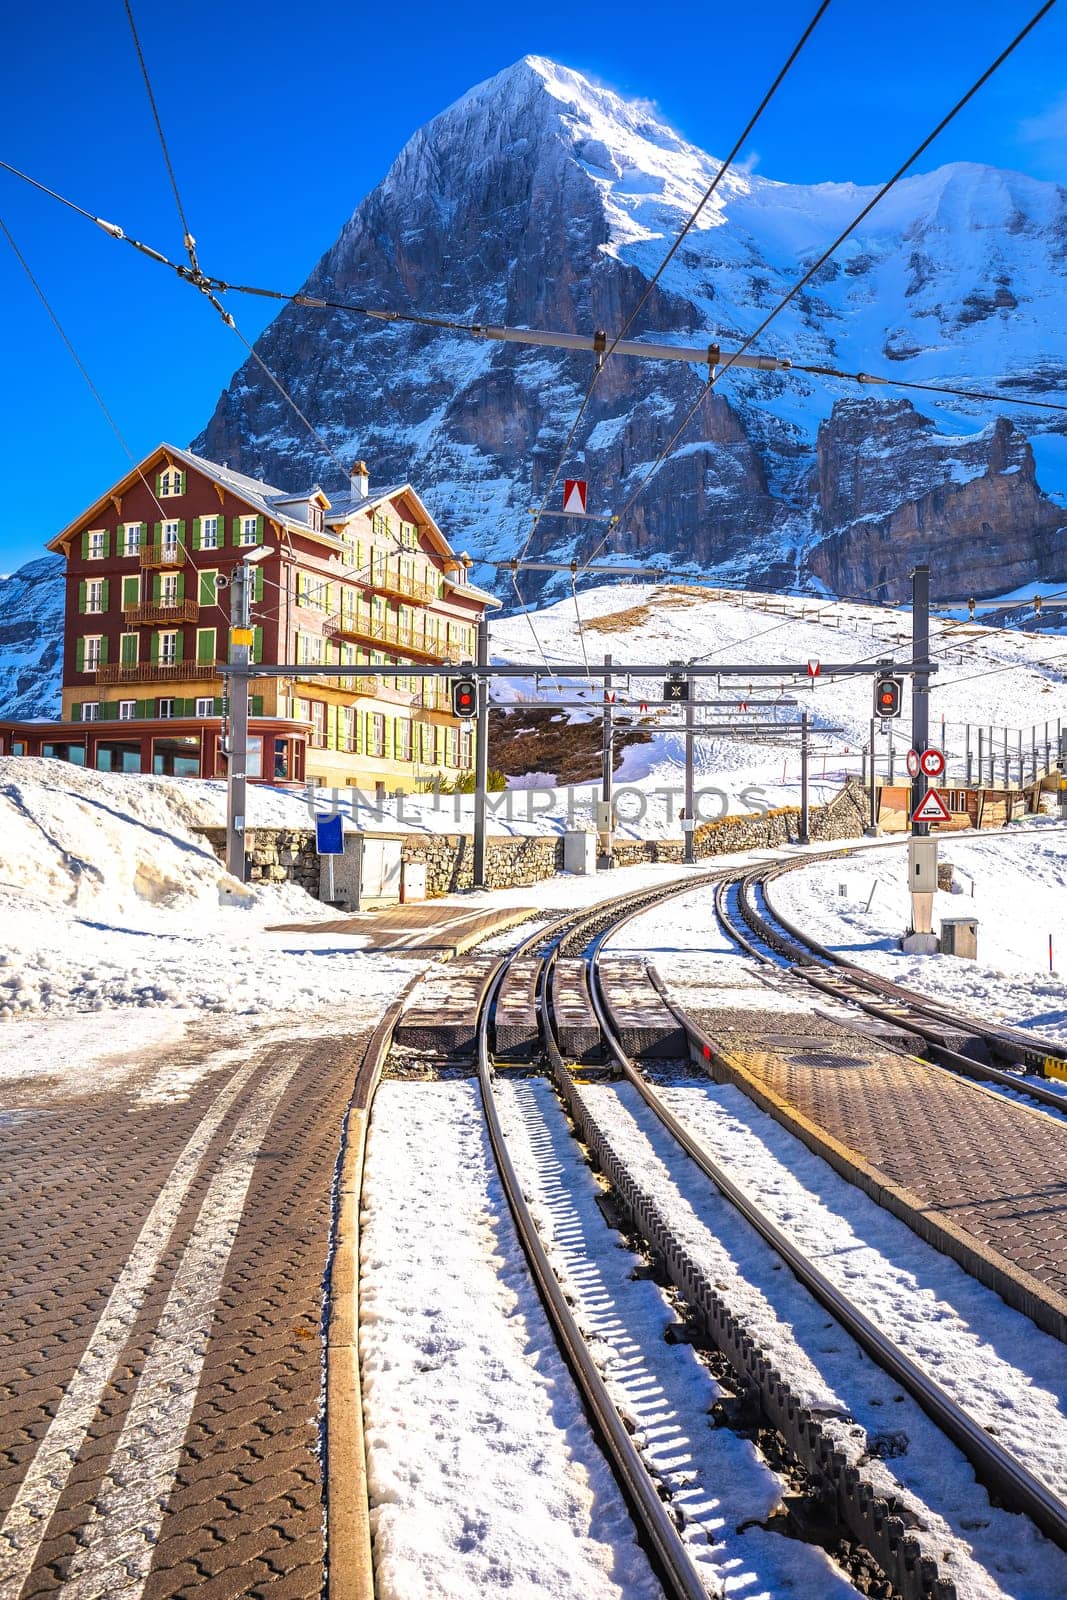 Kleine Scheidegg railway to Jungfraujoch and Eiger peak view by xbrchx